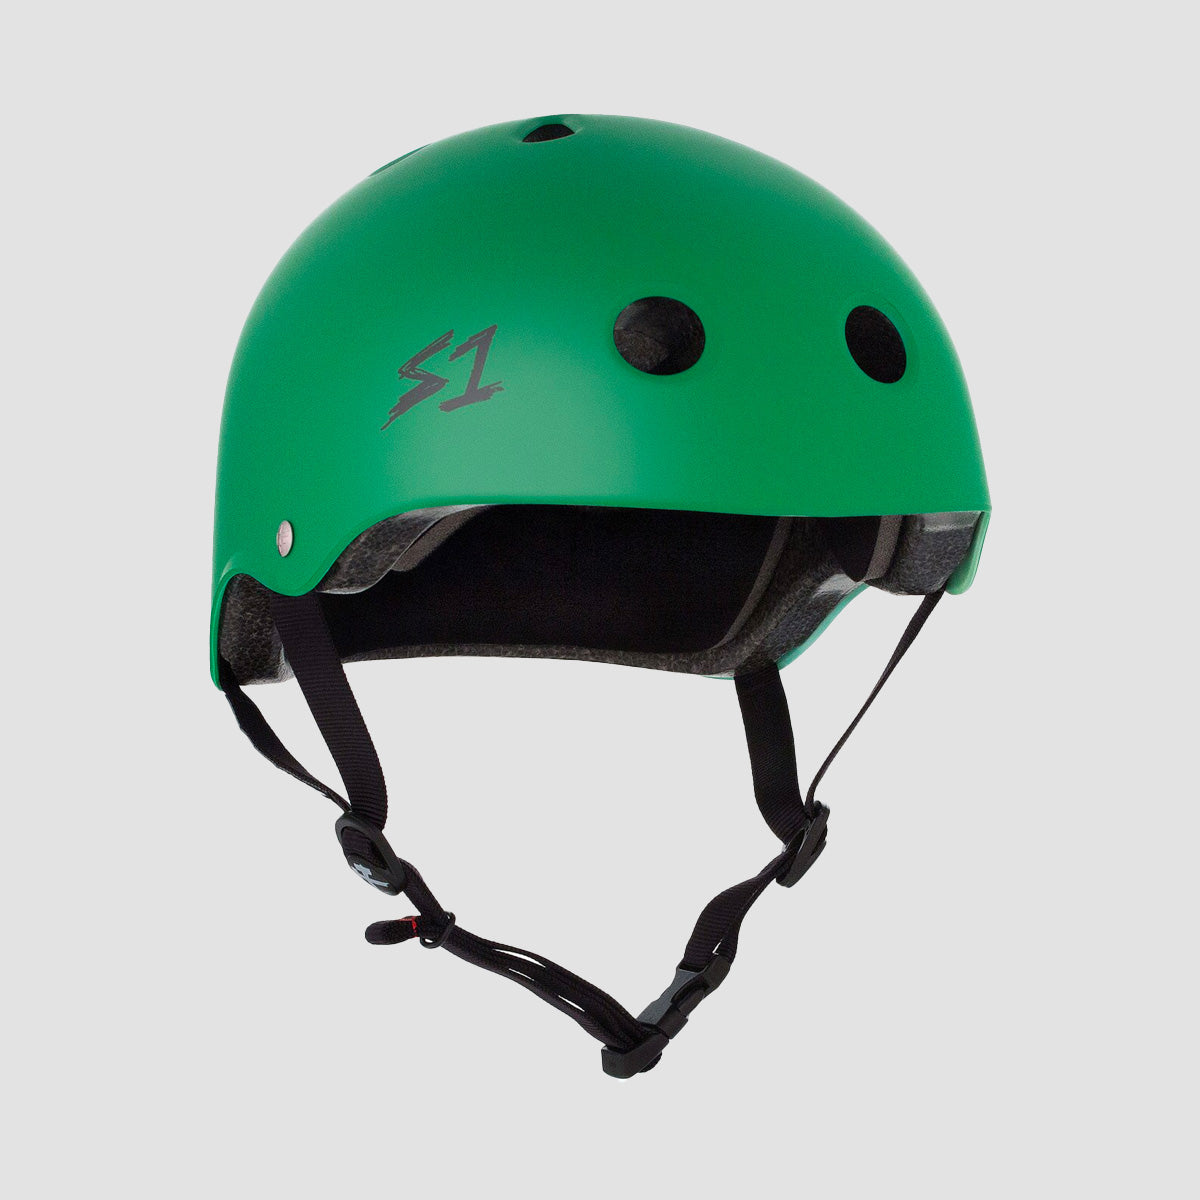 S1 Lifer Helmet Matt Kelly Green